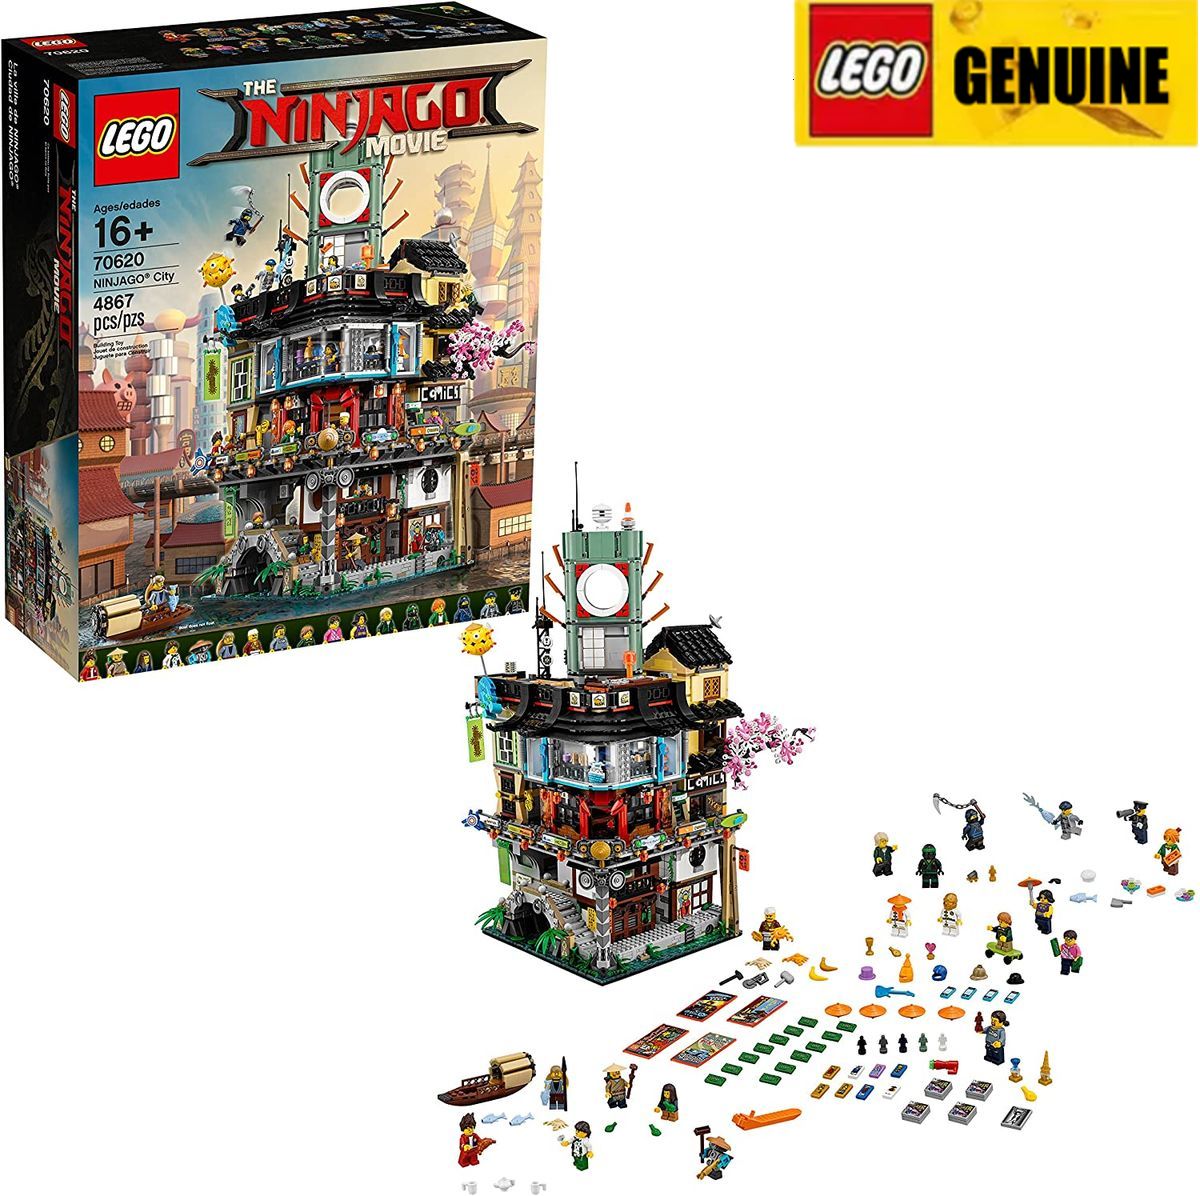 【Genuine】LEGO NINJAGO Thành phố Ninjago 70620 (4867Miếng) Đảm bảo chính hãng, từ Đan Mạch